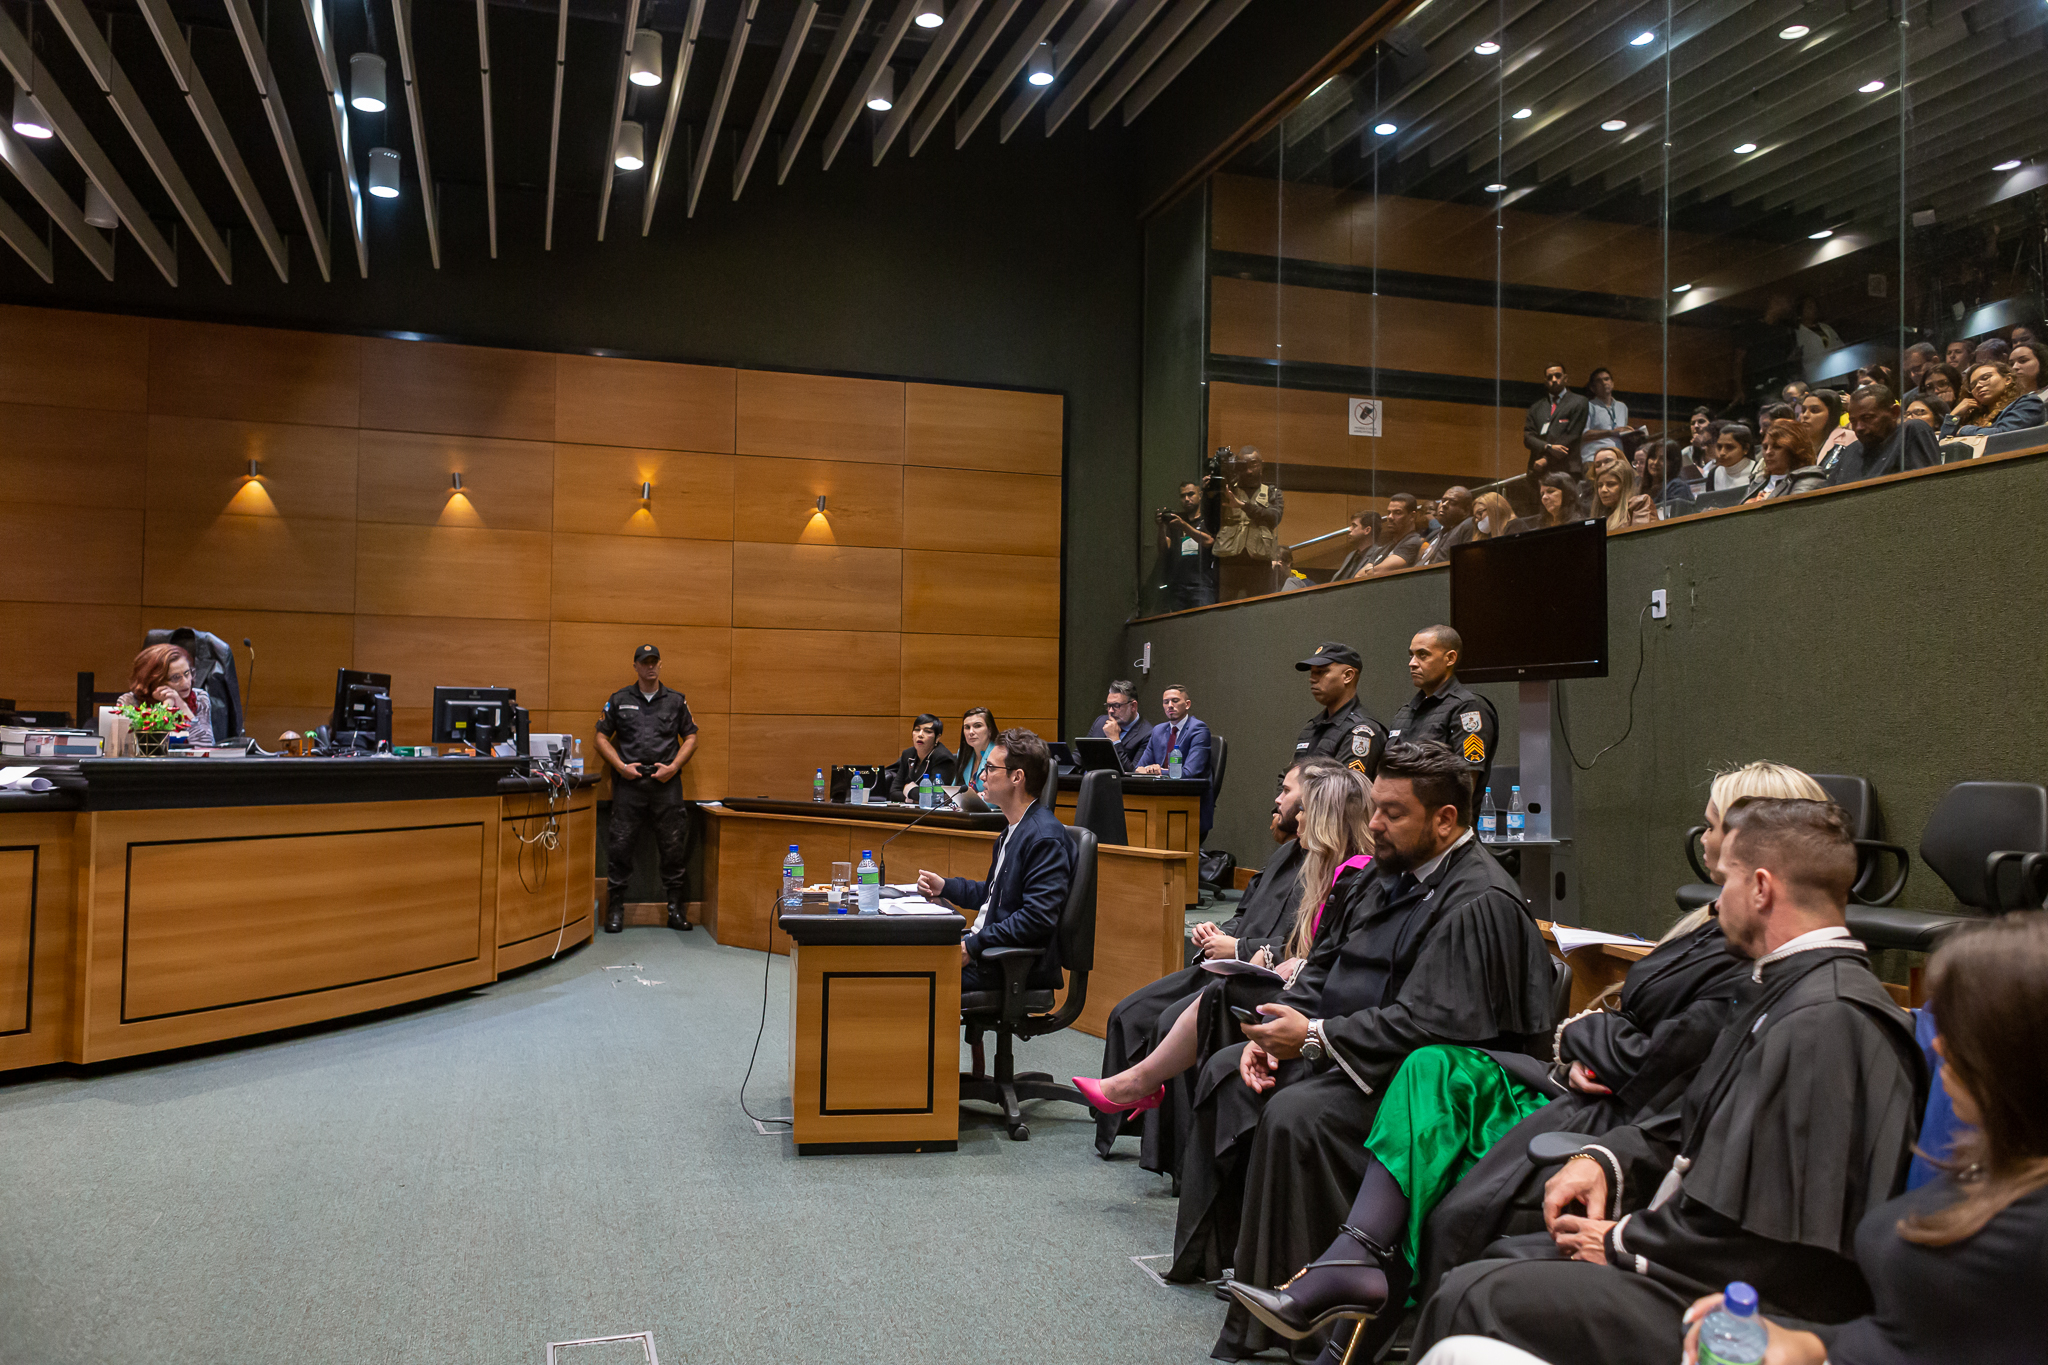 No plenário do Segundo Tribunal do Júri, Jairinho está sentado no banco destinado ao réu olhando para a juíza Elizabeth Louro, que está sentada à frente dele. Os advogados de defesa de Jairinho estão sentados ao seu lado esquerdo.